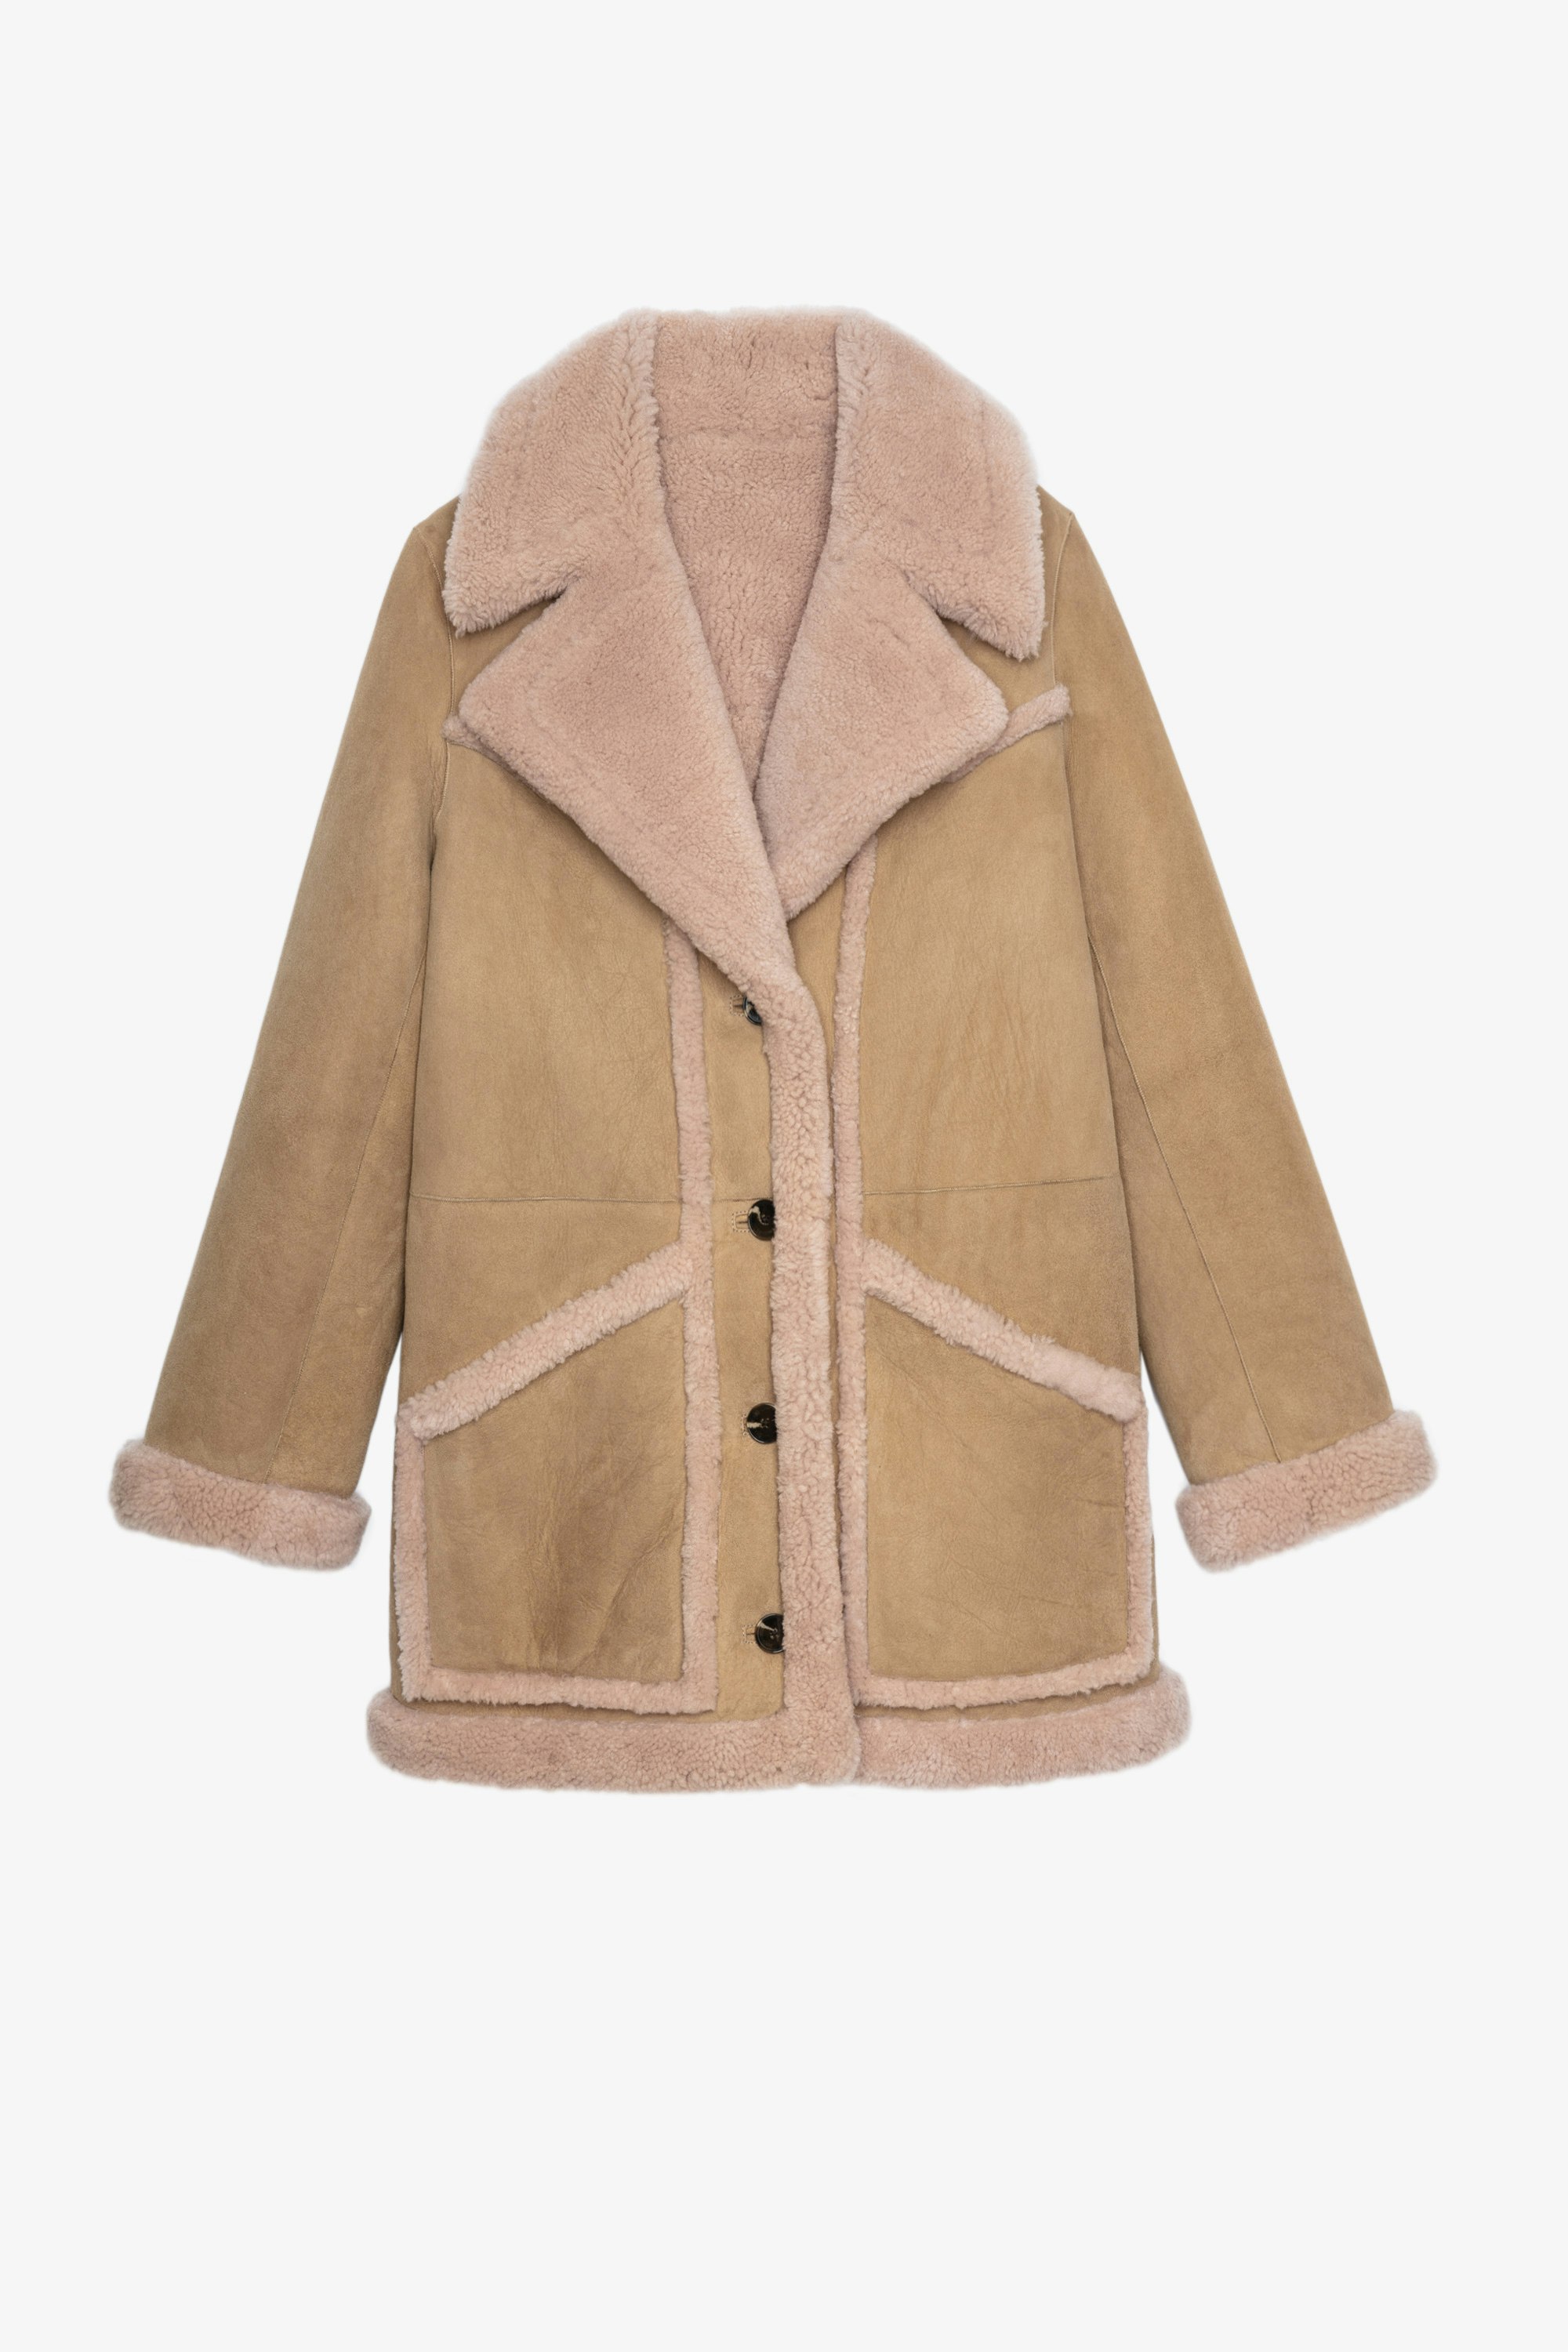 Laury Shearling Coat Women’s camel shearling coat